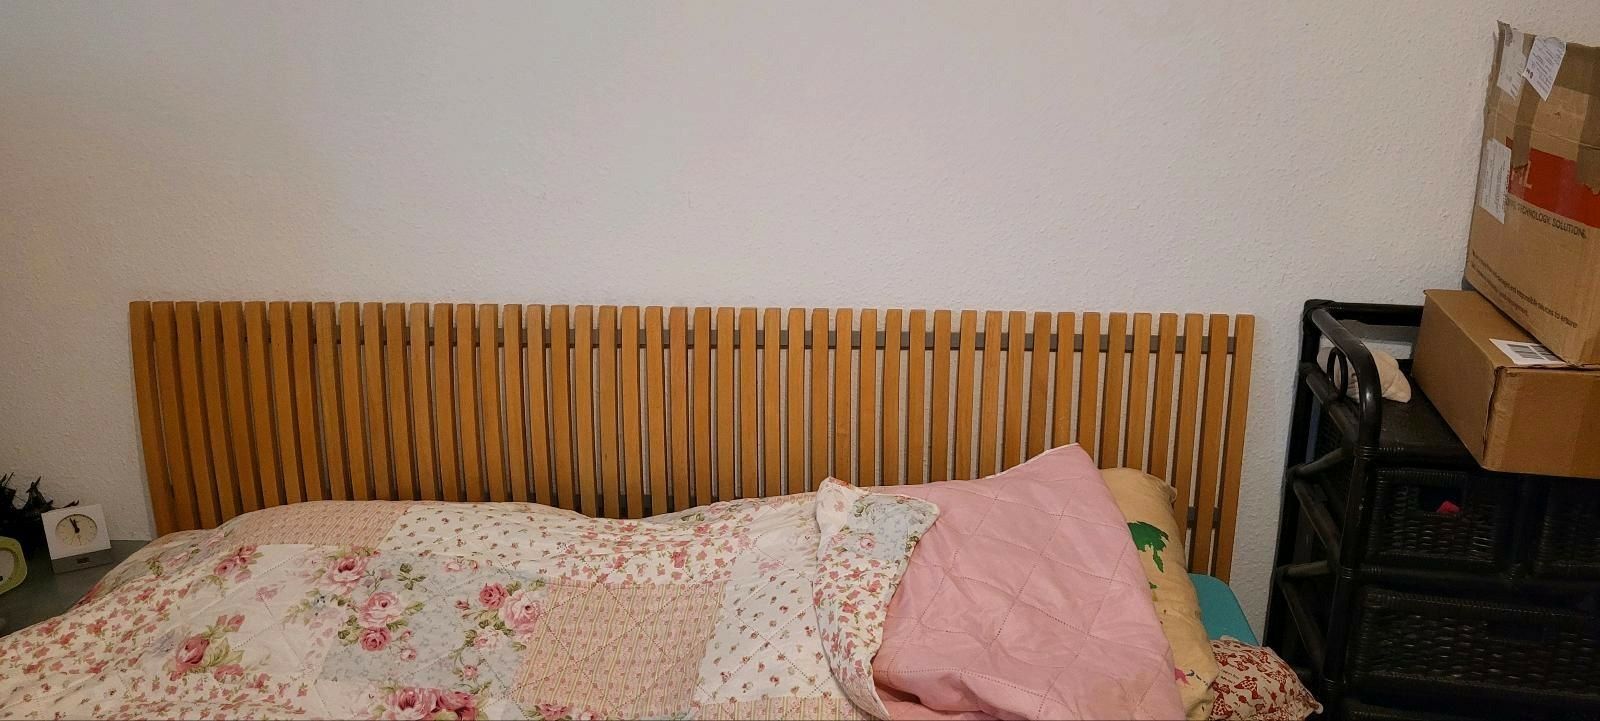 Łóżko podwójne drewniane